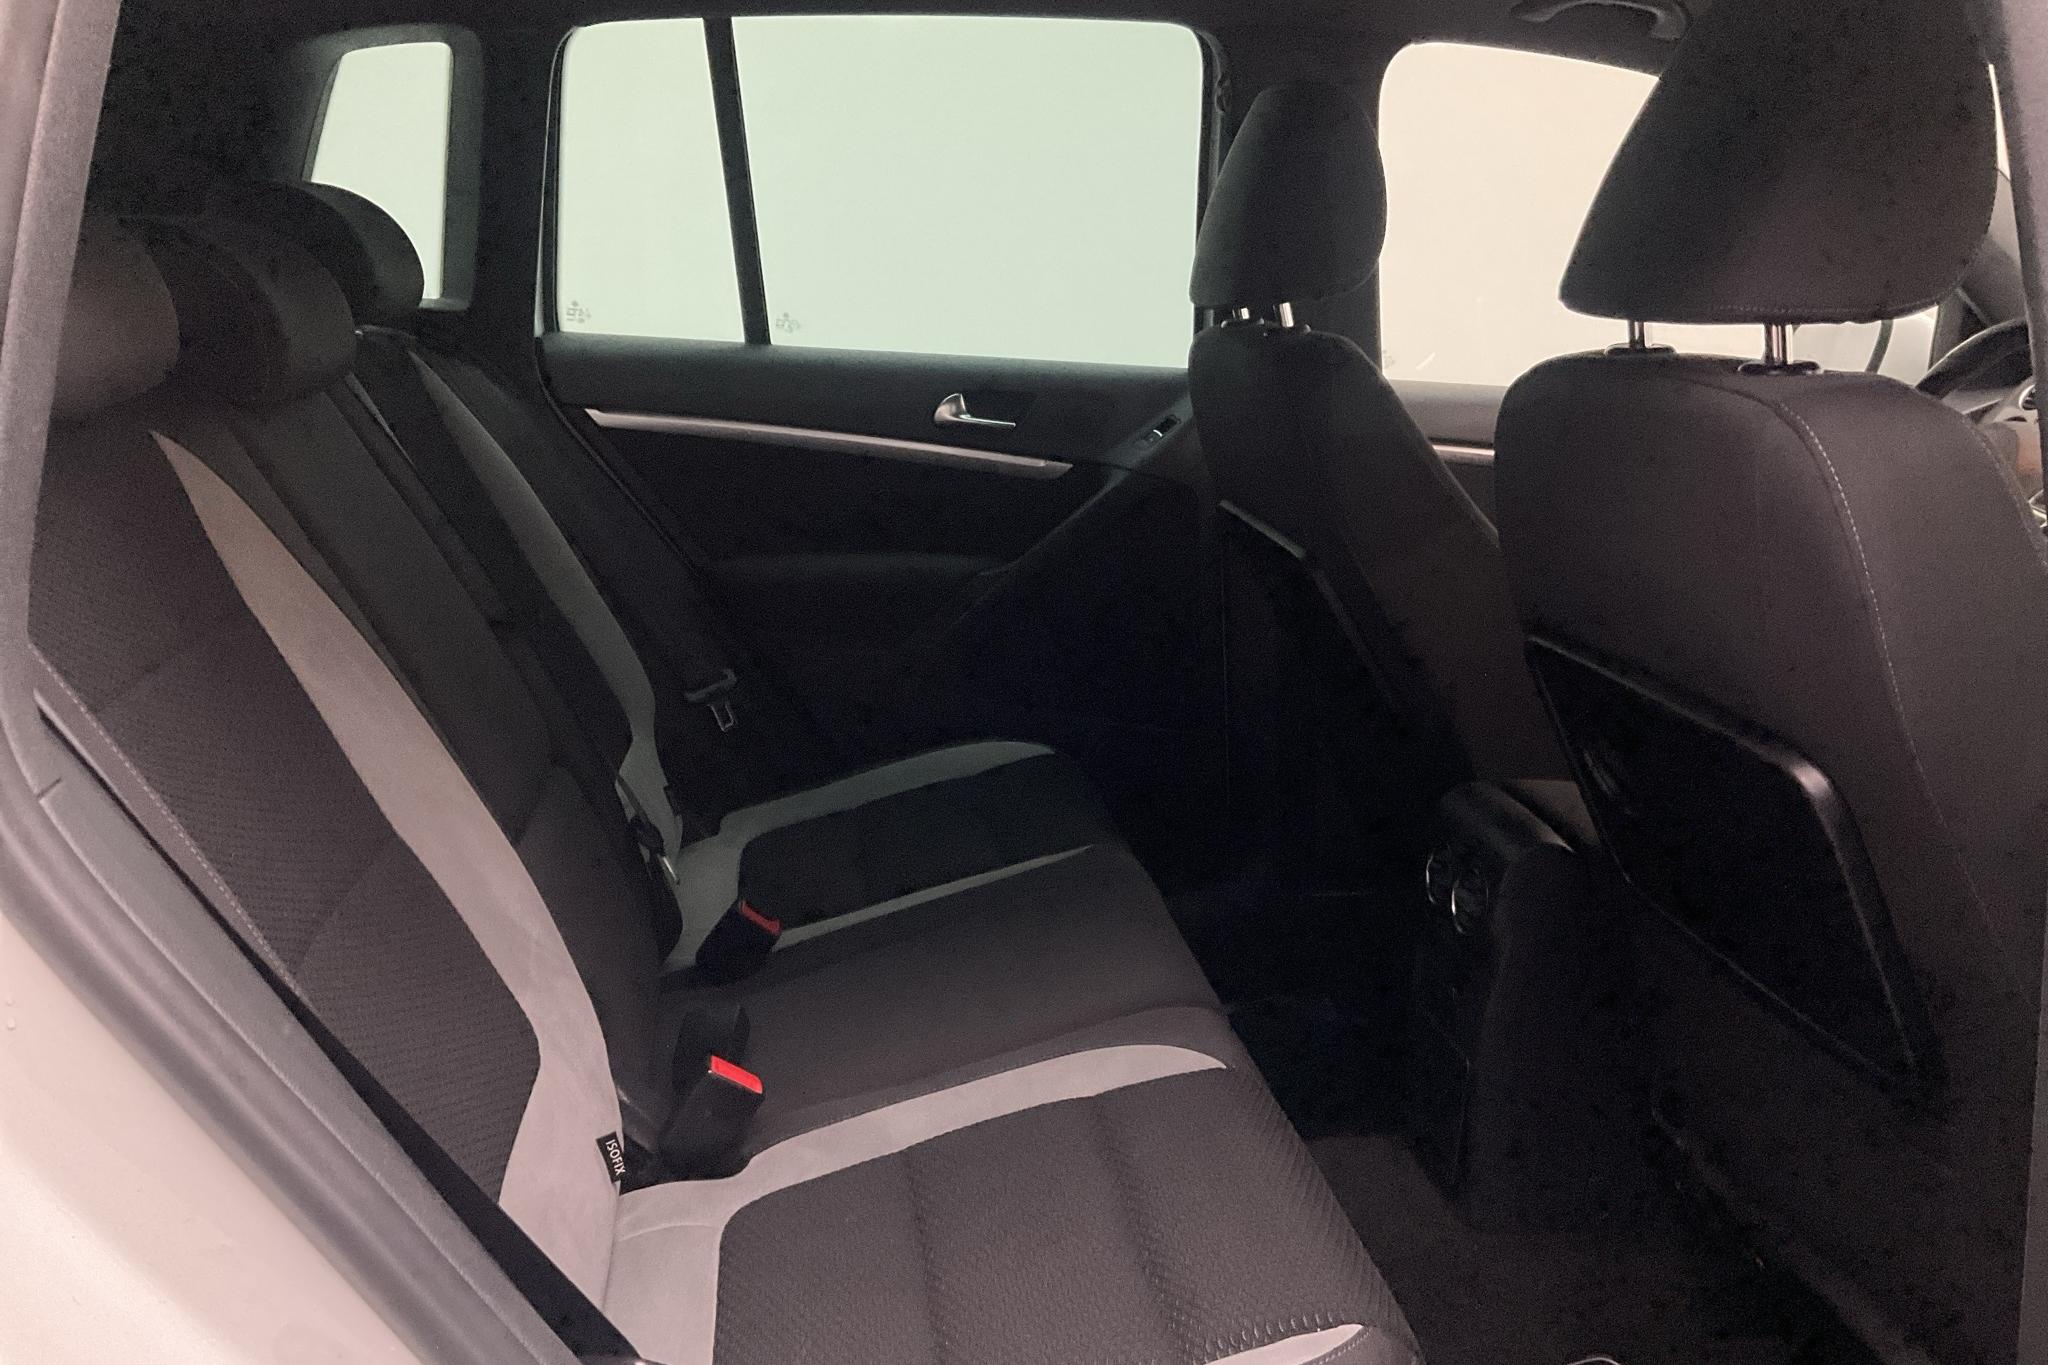 VW Tiguan 1.4 TSI 4MOTION (160hk) - 114 820 km - Manual - white - 2015